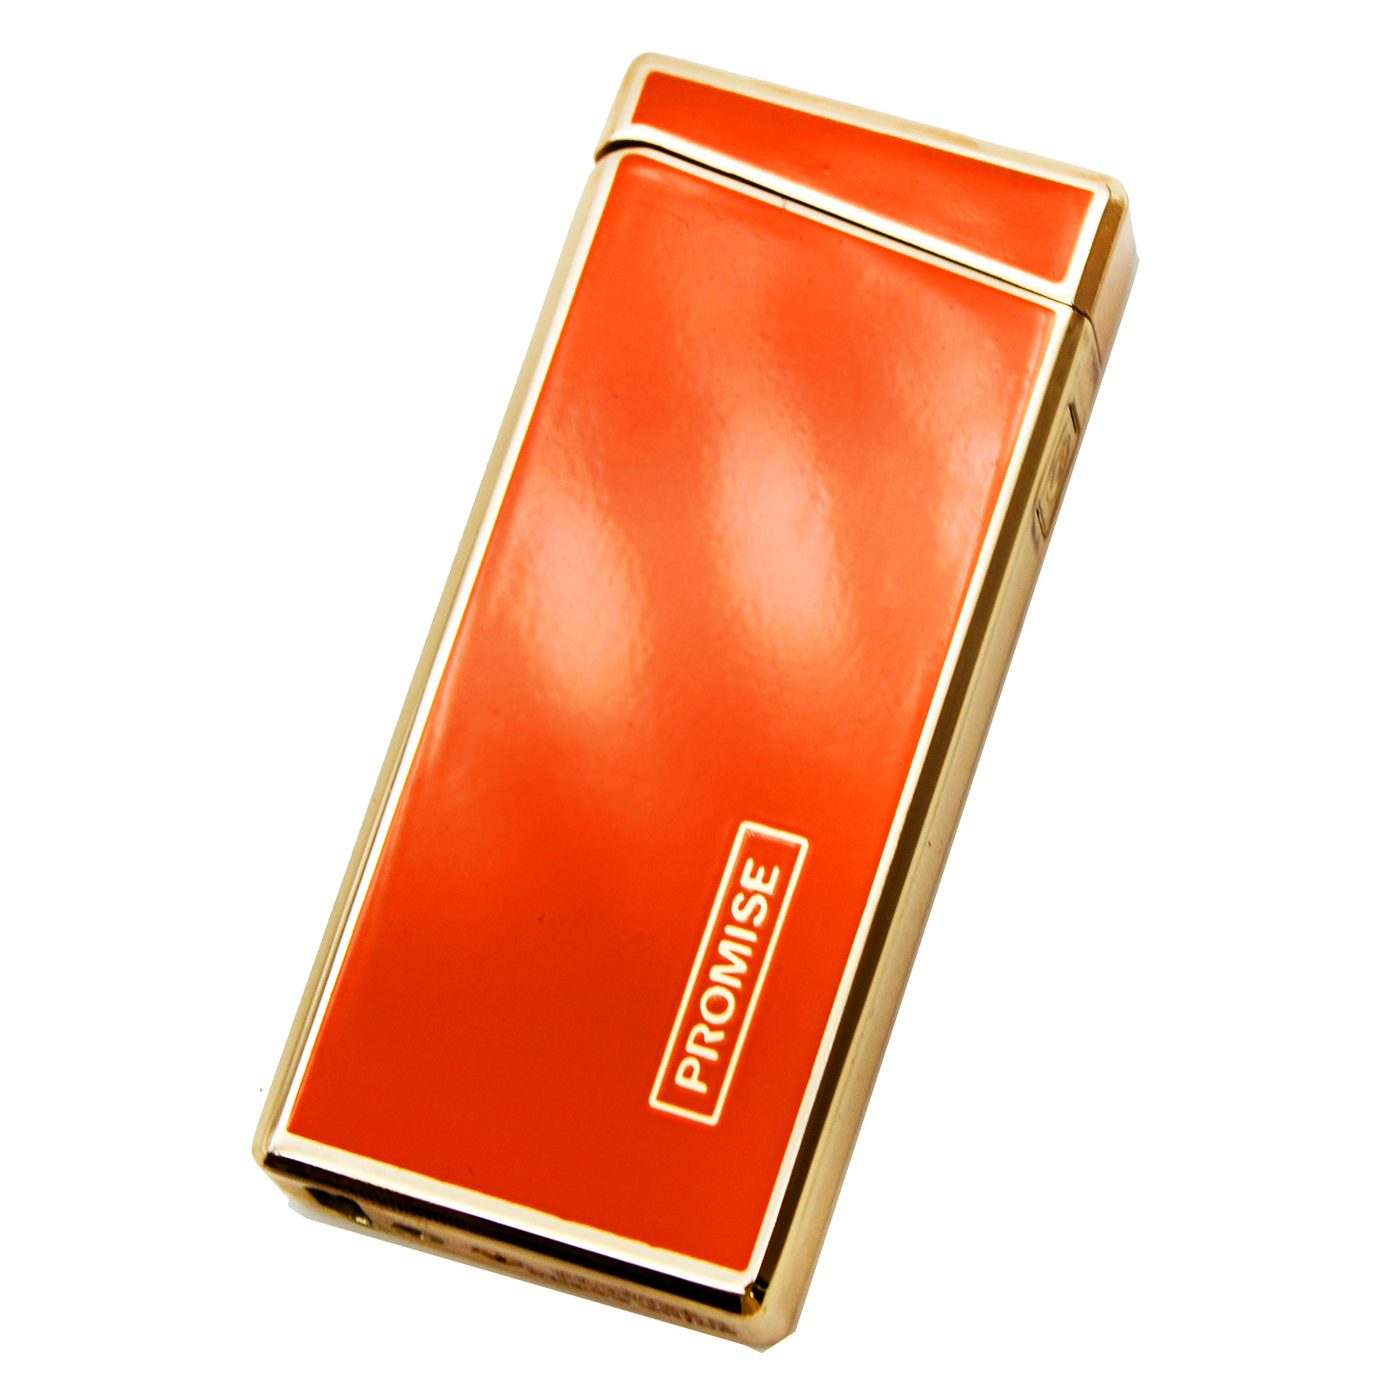 нная импульсная USB Зажигалка Promise в мешочке Оранжевая .